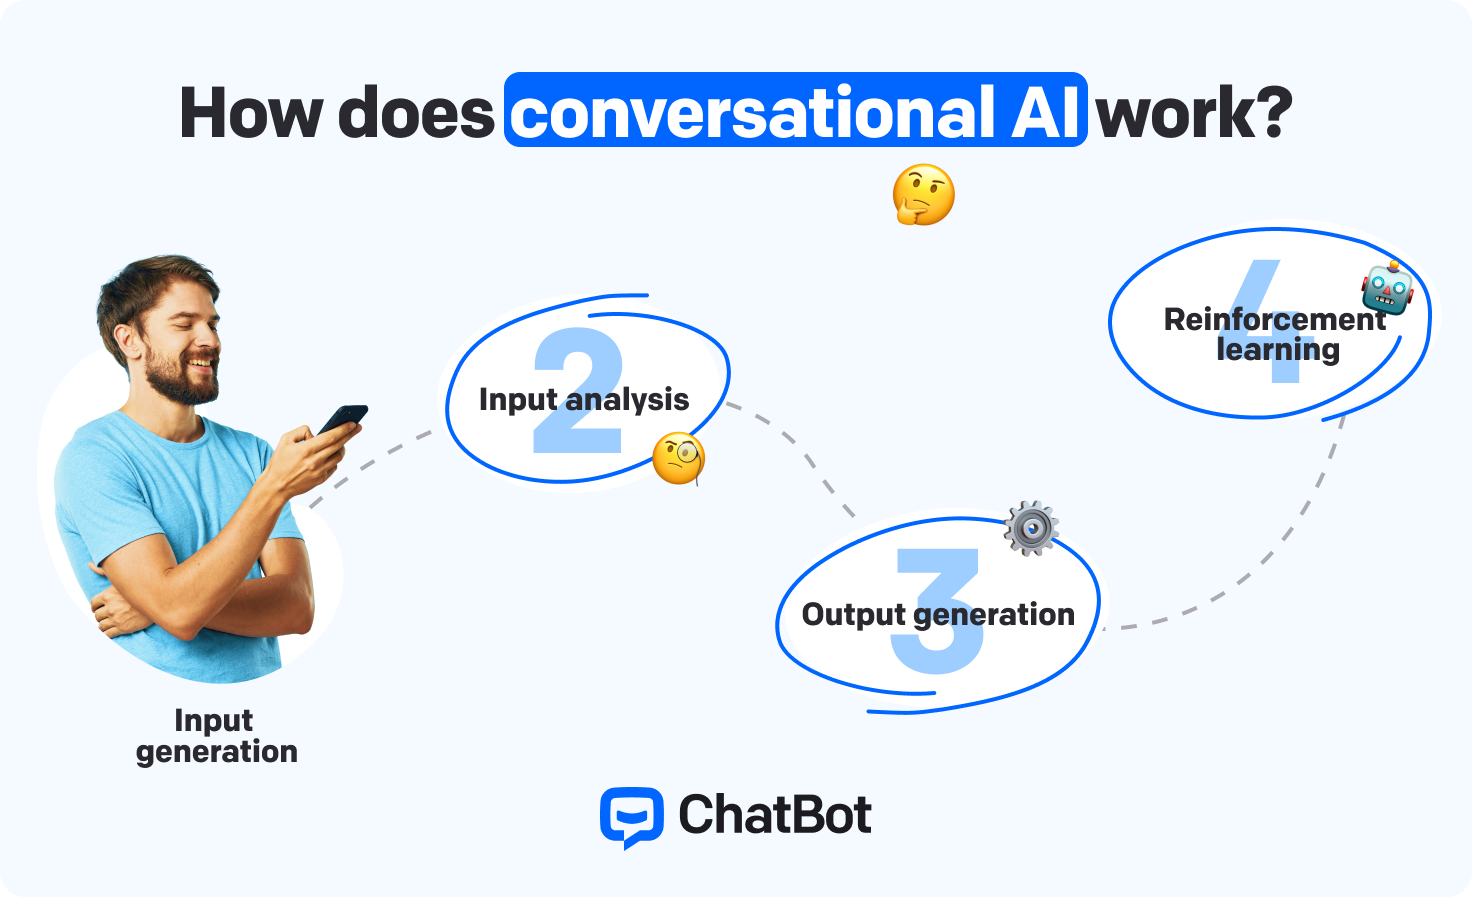 توضح الخطوات كيف يتواصل الذكاء الاصطناعي للمحادثات مع المستخدمين